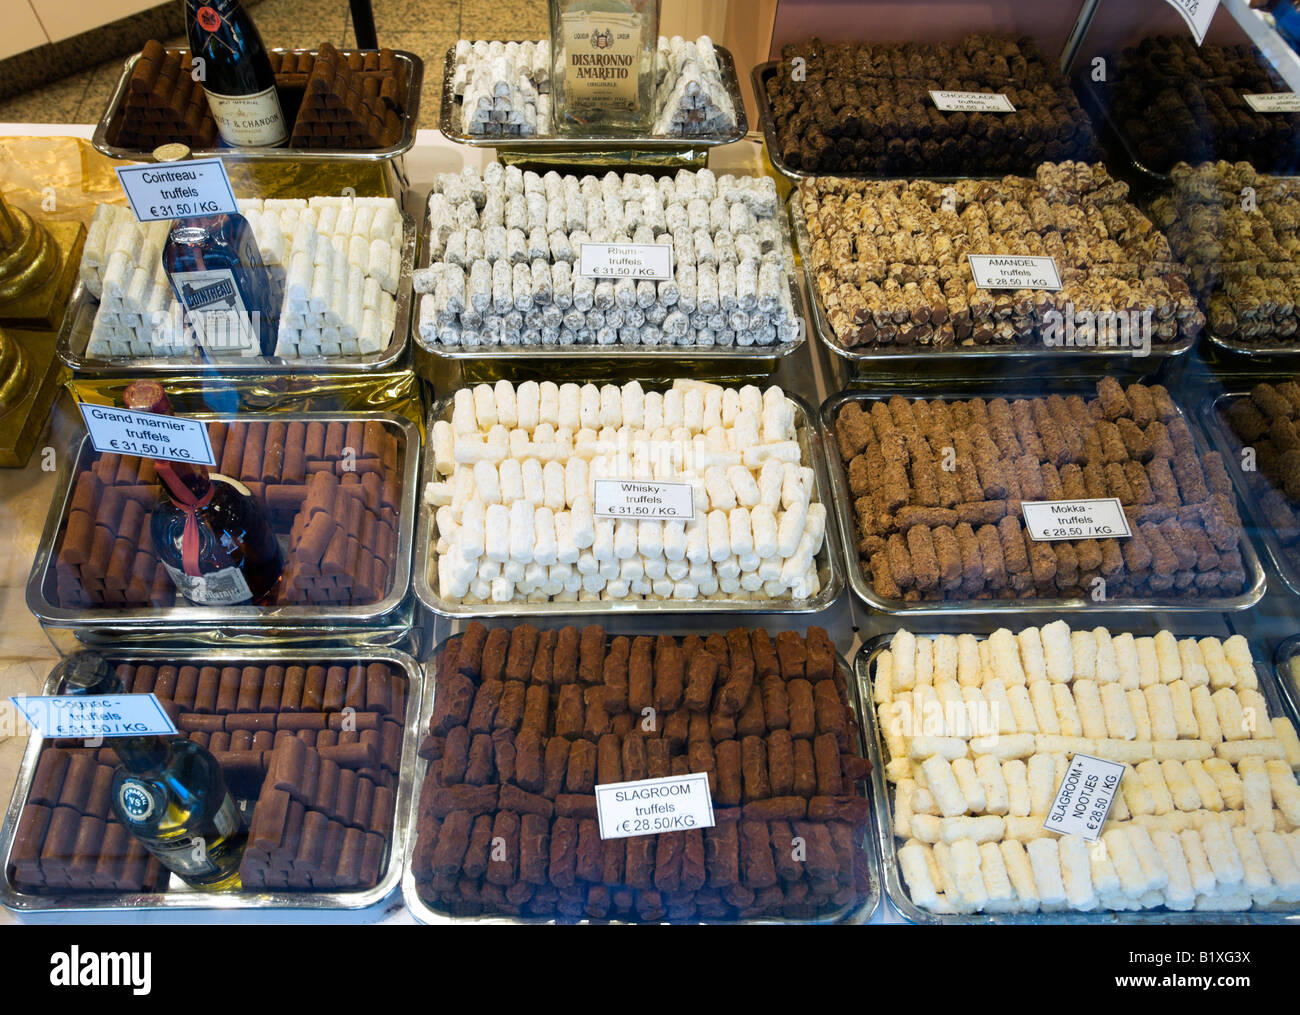 Afficher la fenêtre de chocolats belges, Bruges, Belgique Banque D'Images